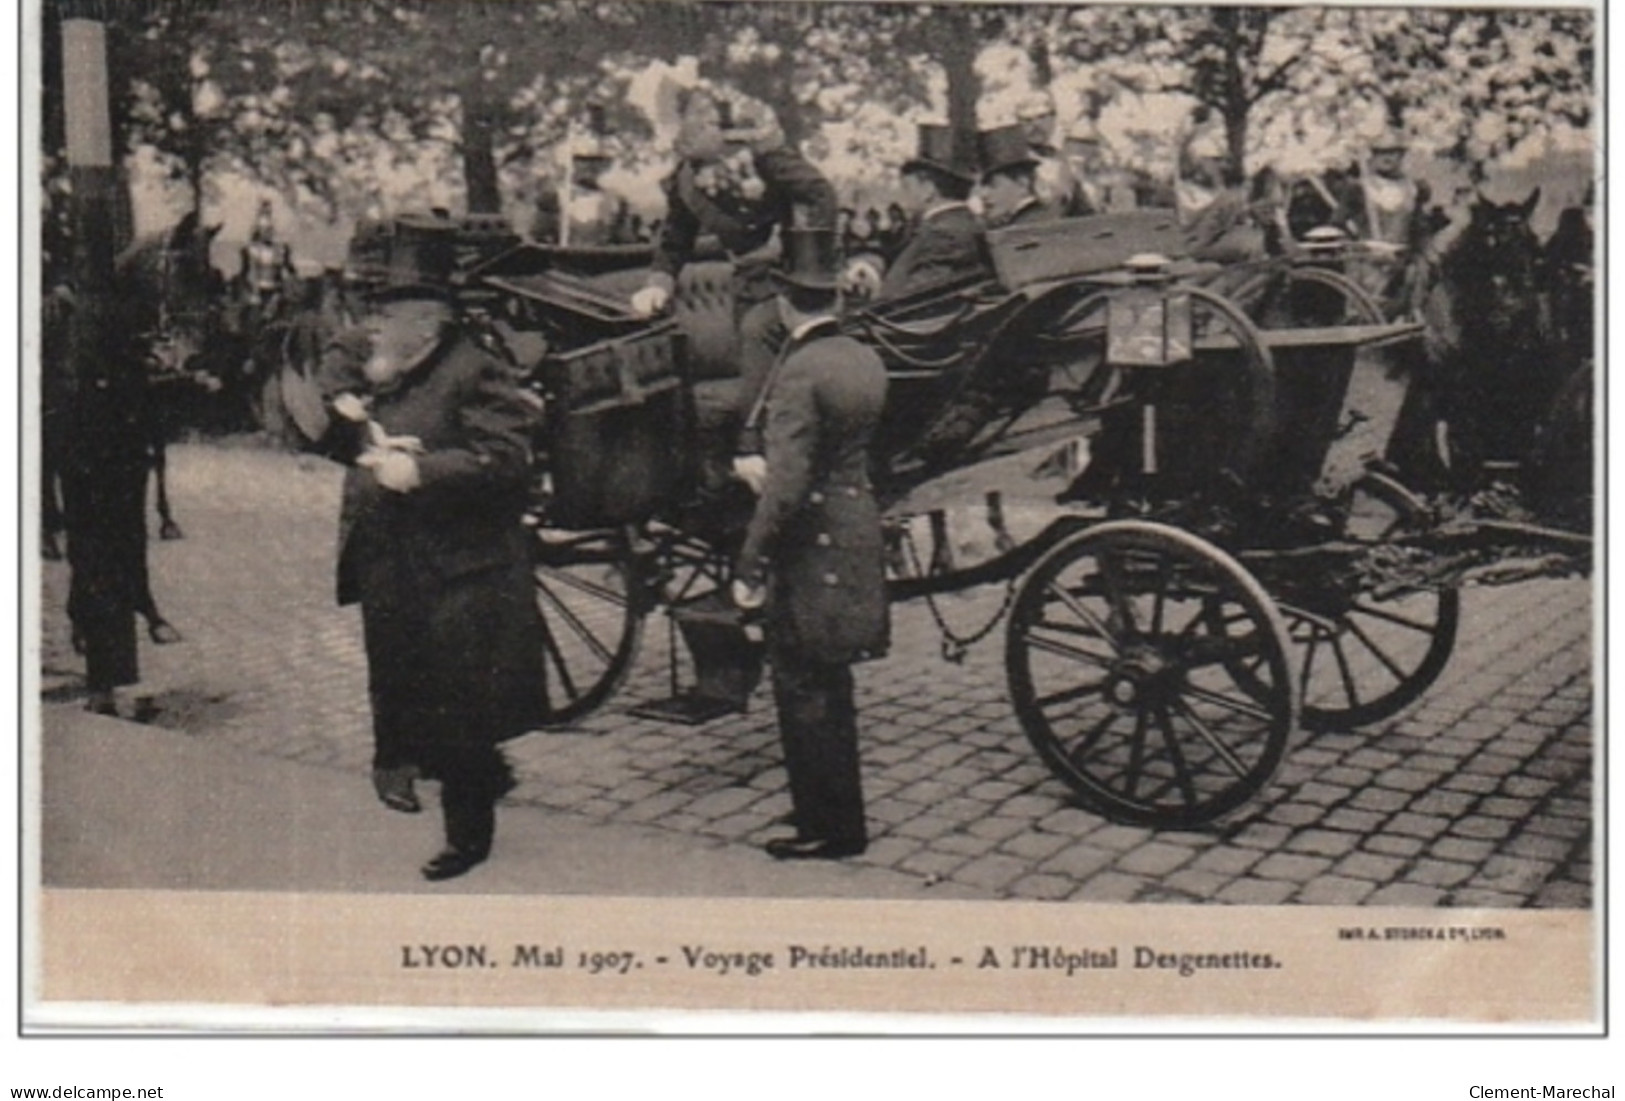 LYON : mai 1907 - voyage présidentiel (Lot de 18 cartes postales anciennes sur soie) - très bon état